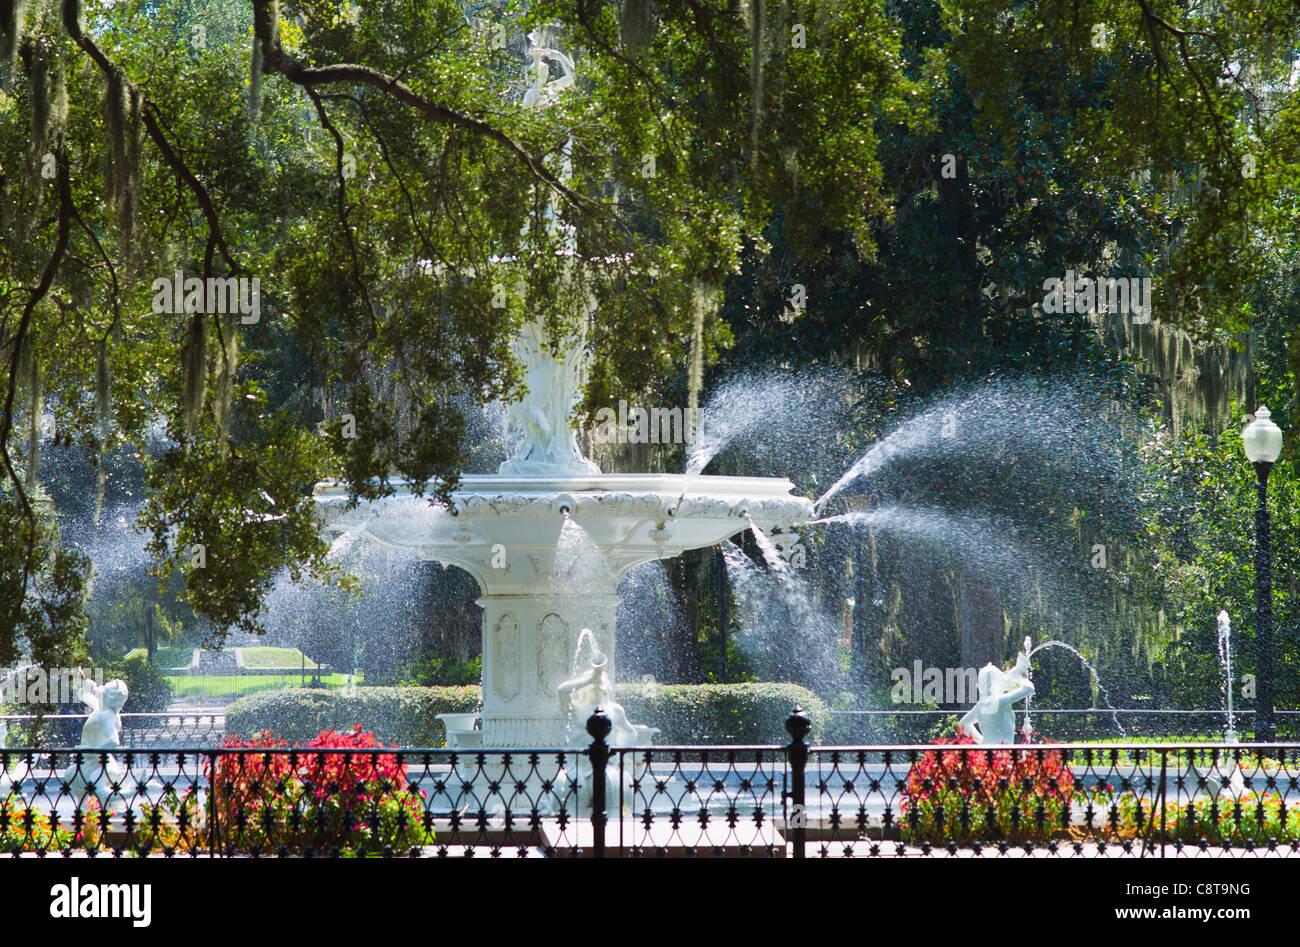 USA, Georgia, Savannah, Foley Square fountain Banque D'Images